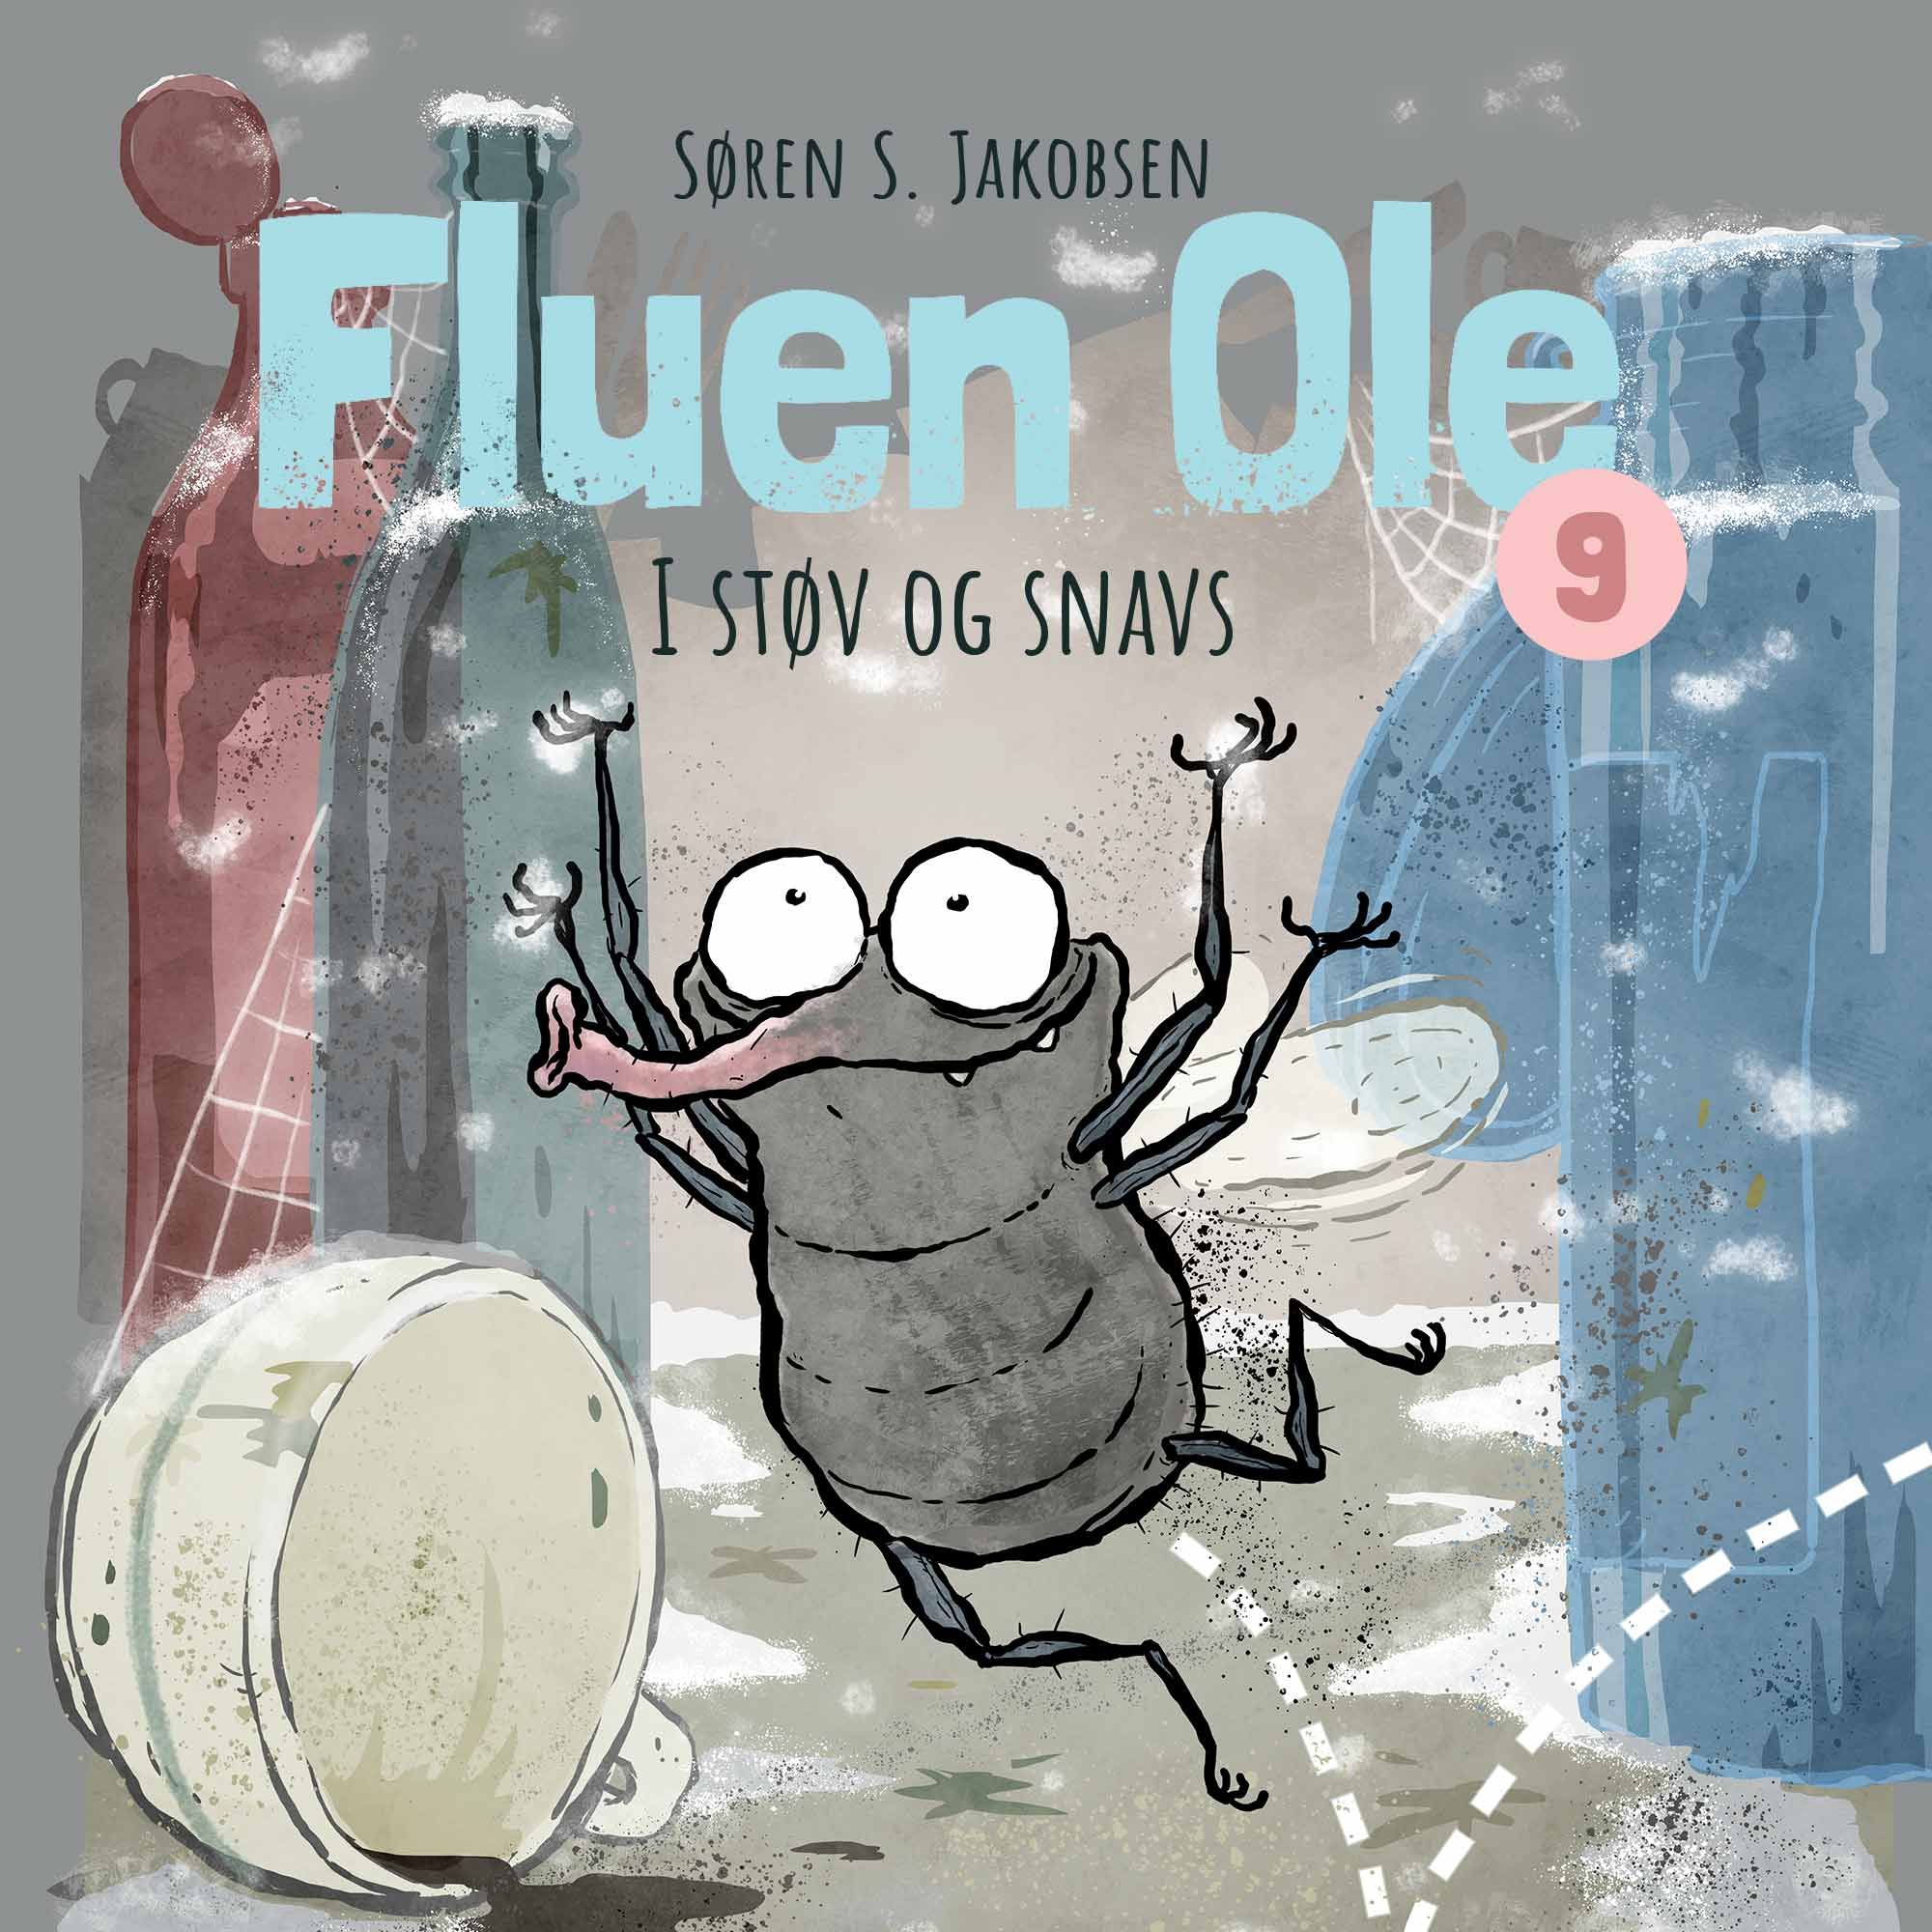 Fluen Ole #9: Fluen Ole i støv og snavs, audiobook by Søren S. Jakobsen